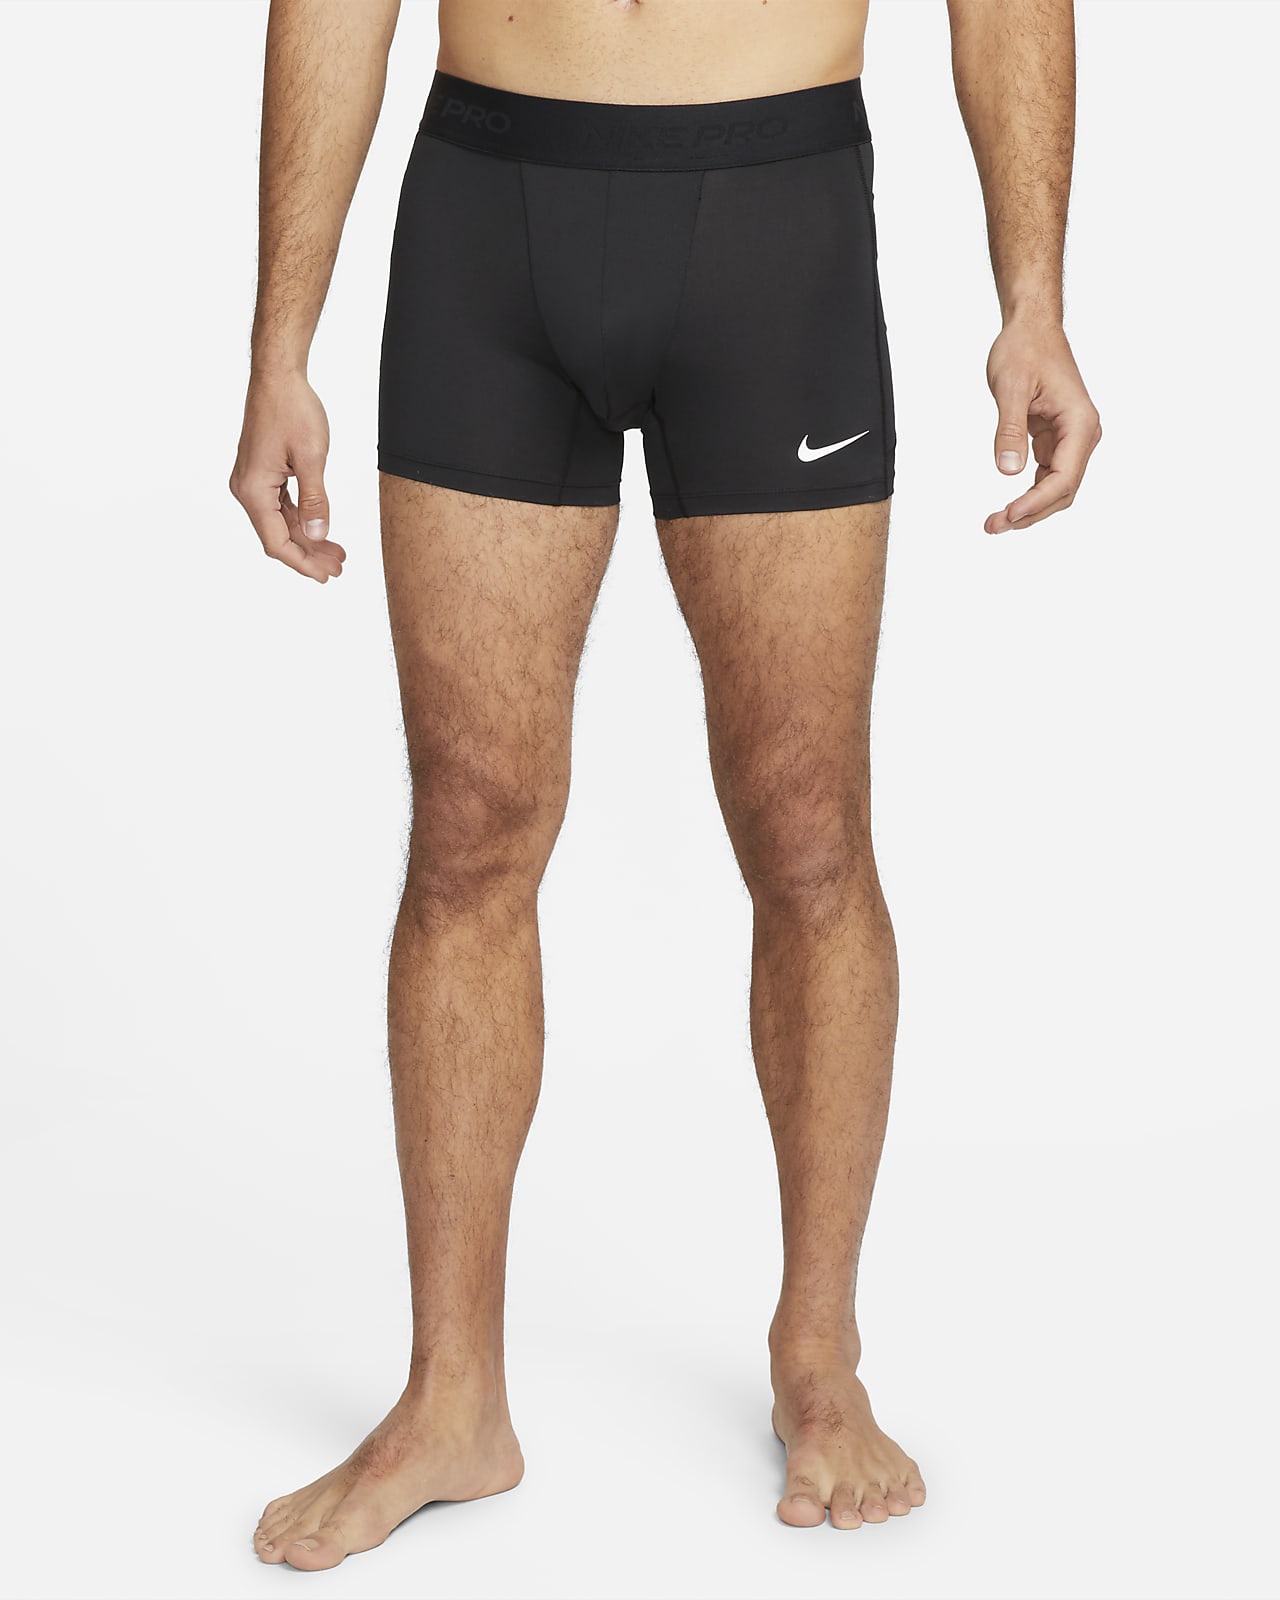 Shorts con ropa interior Dri-FIT para hombre Nike Pro